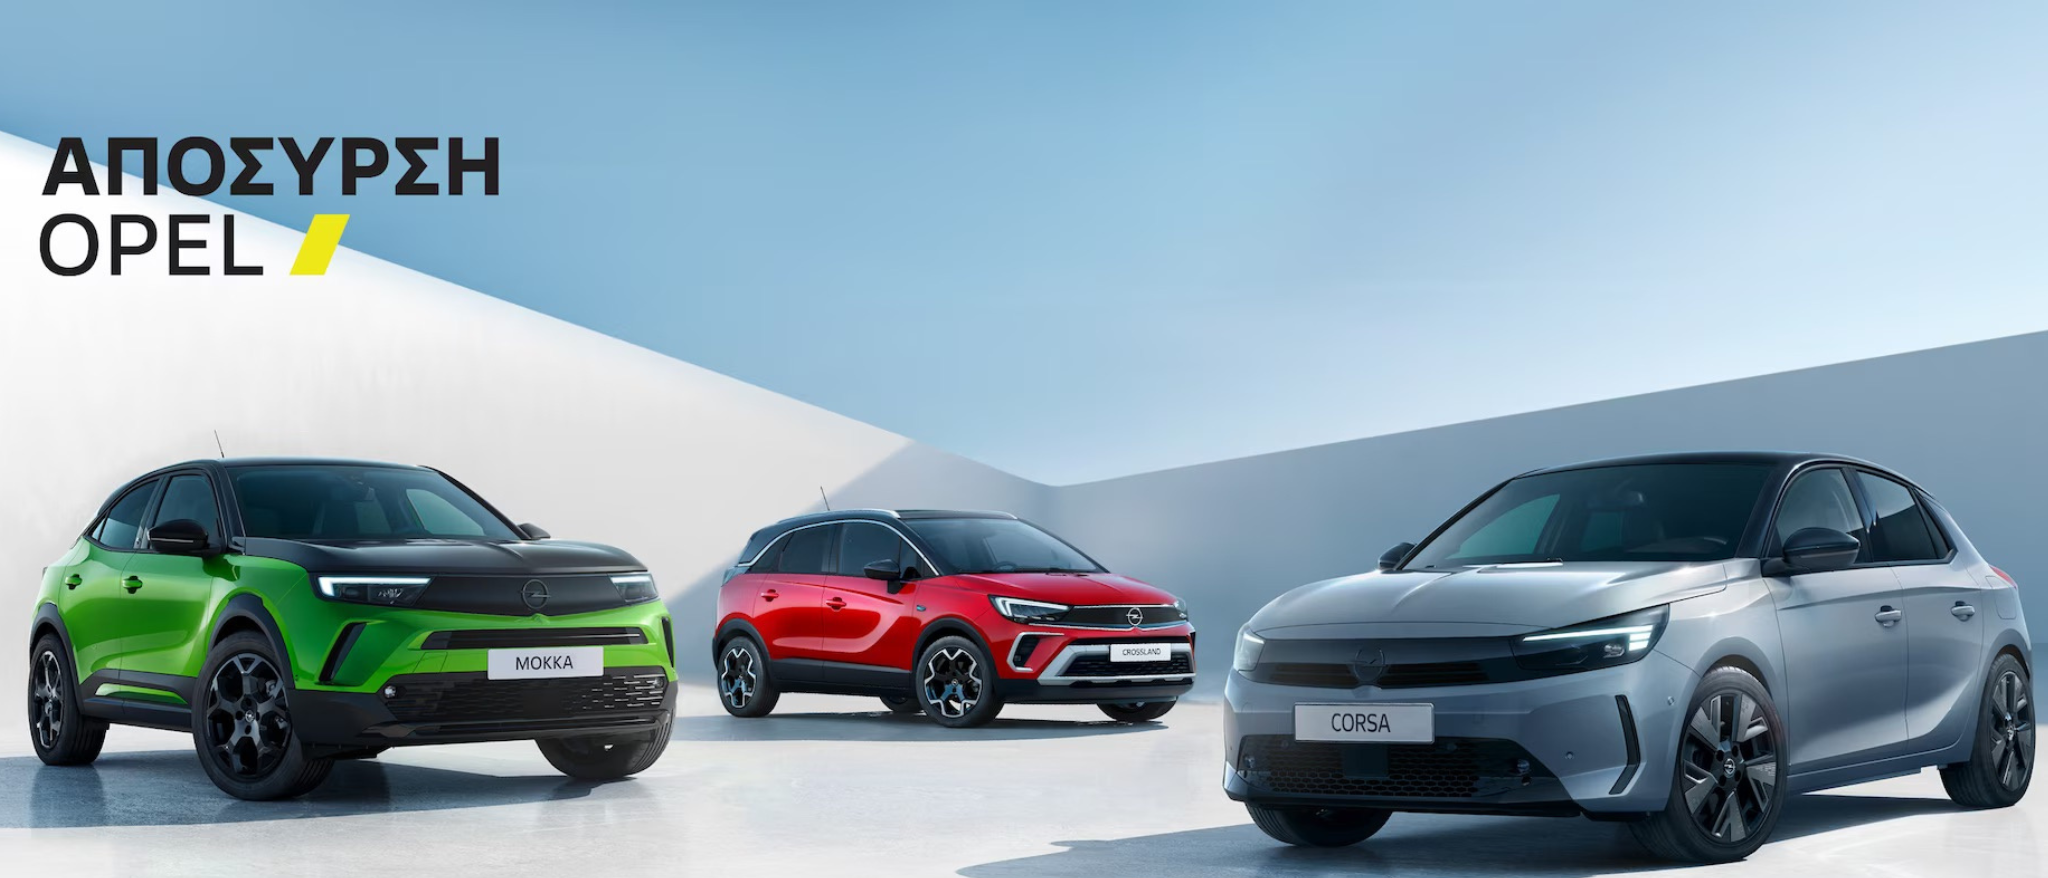 Νέο πρόγραμμα Απόσυρσης – Ανταλλαγής από την Opel!